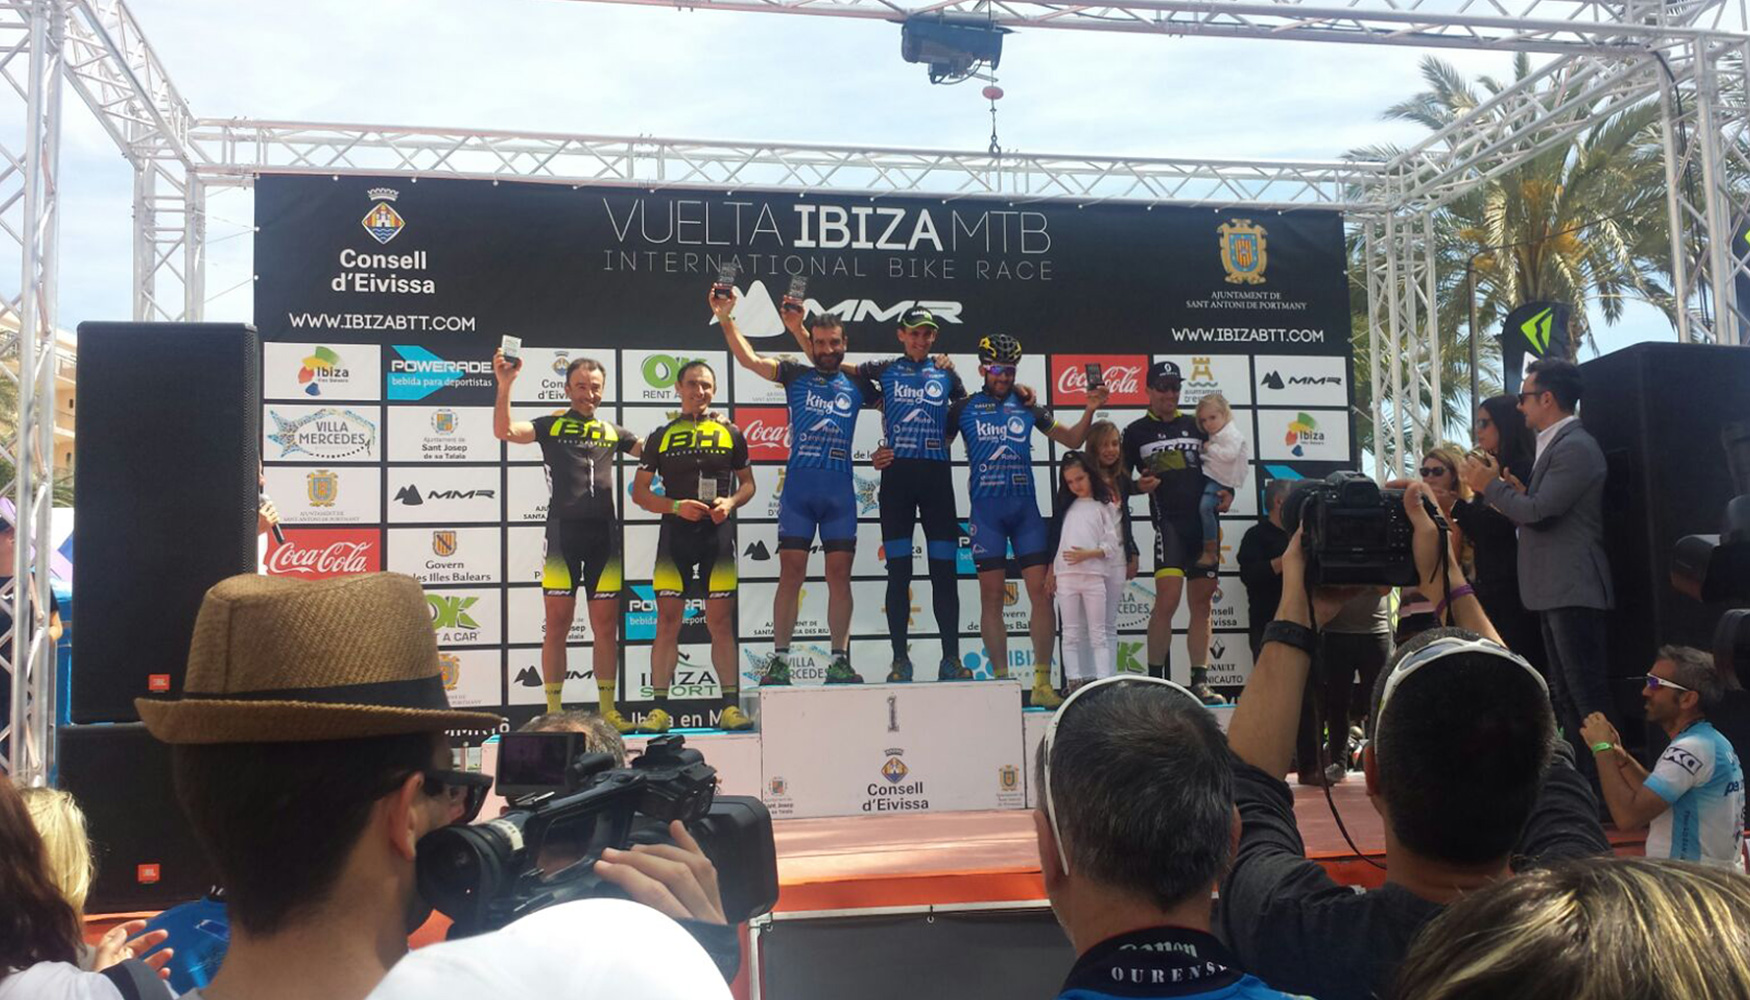 El equipo King Barcelona/Interempresas.net obtuvo magnficas posiciones en la Vuelta a Ibiza en BTT